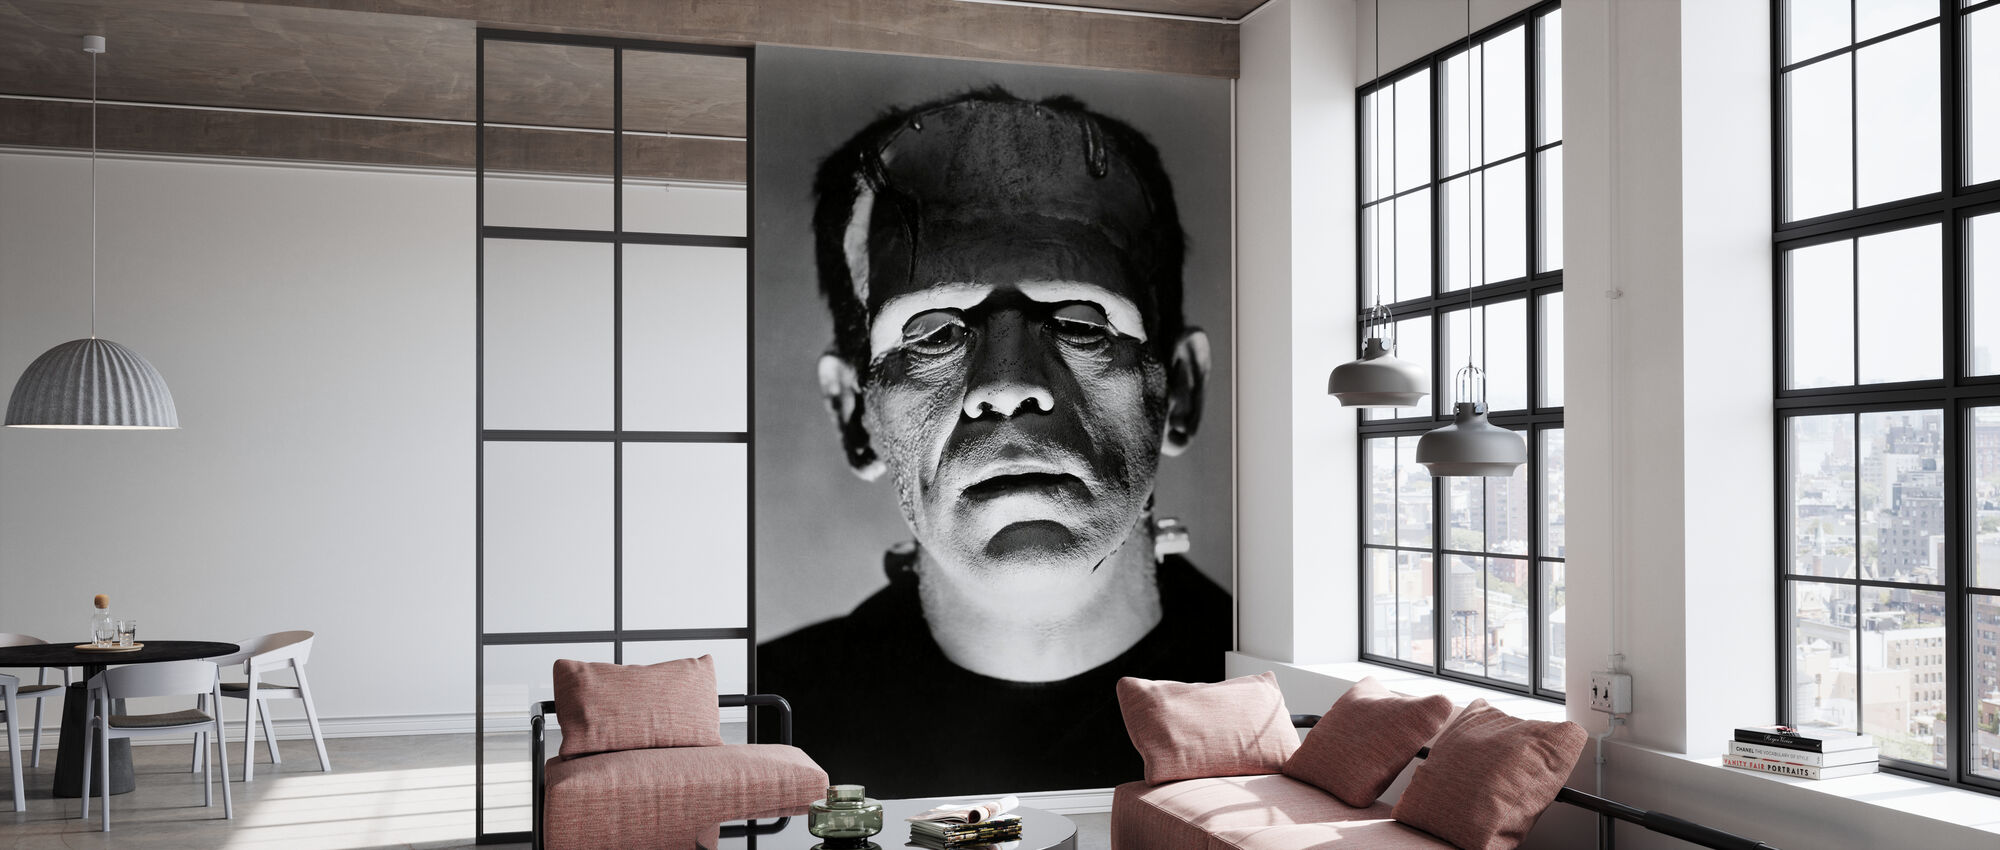 The Bride Of Frankenstein Wallpapers